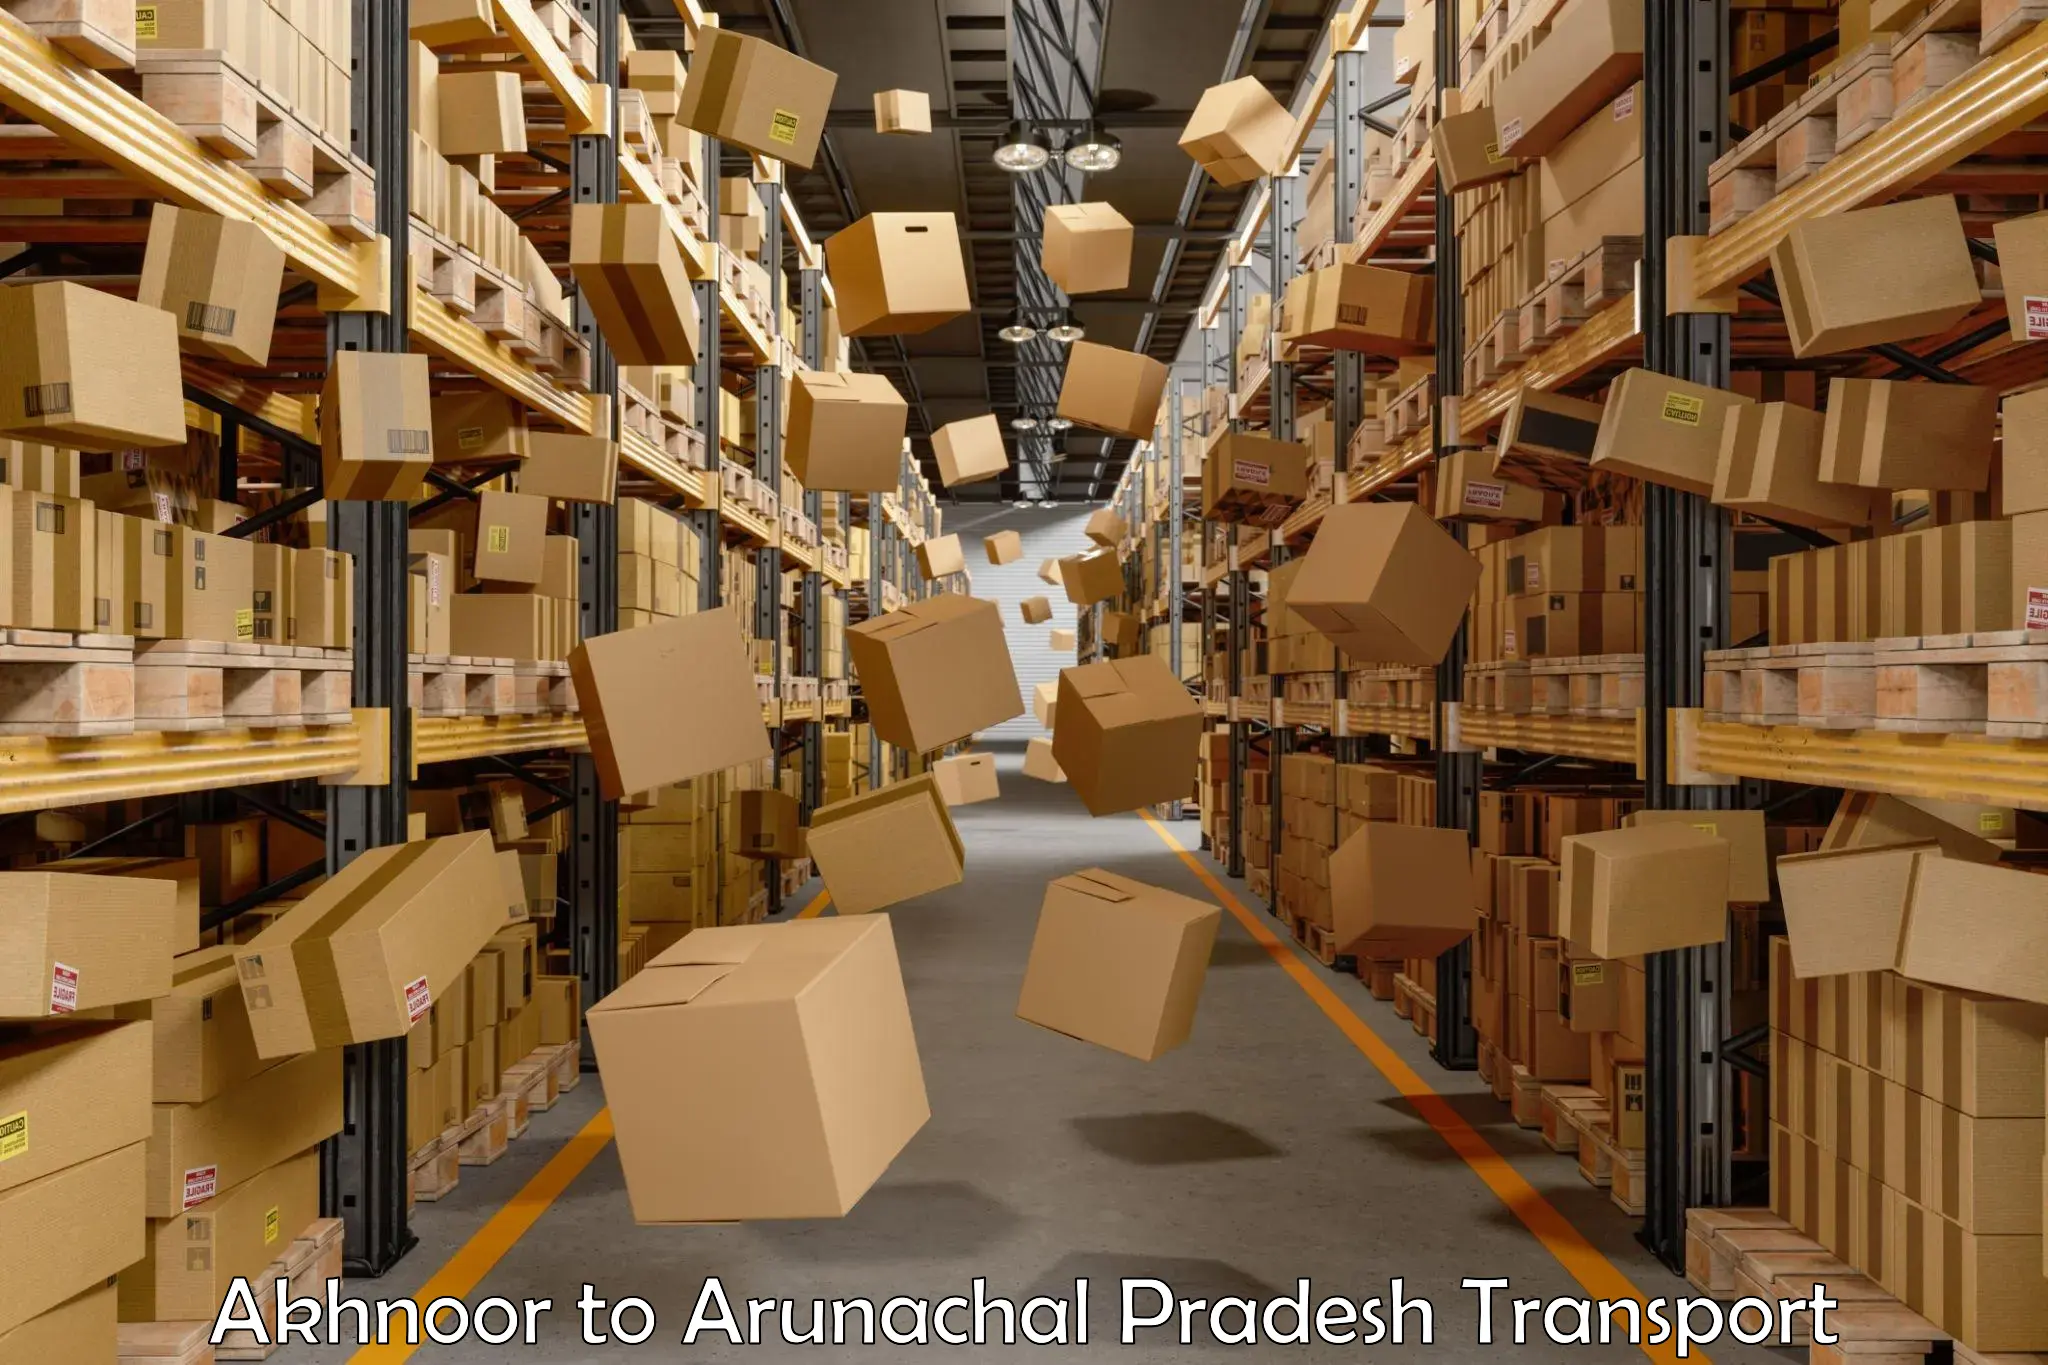 Truck transport companies in India Akhnoor to Arunachal Pradesh